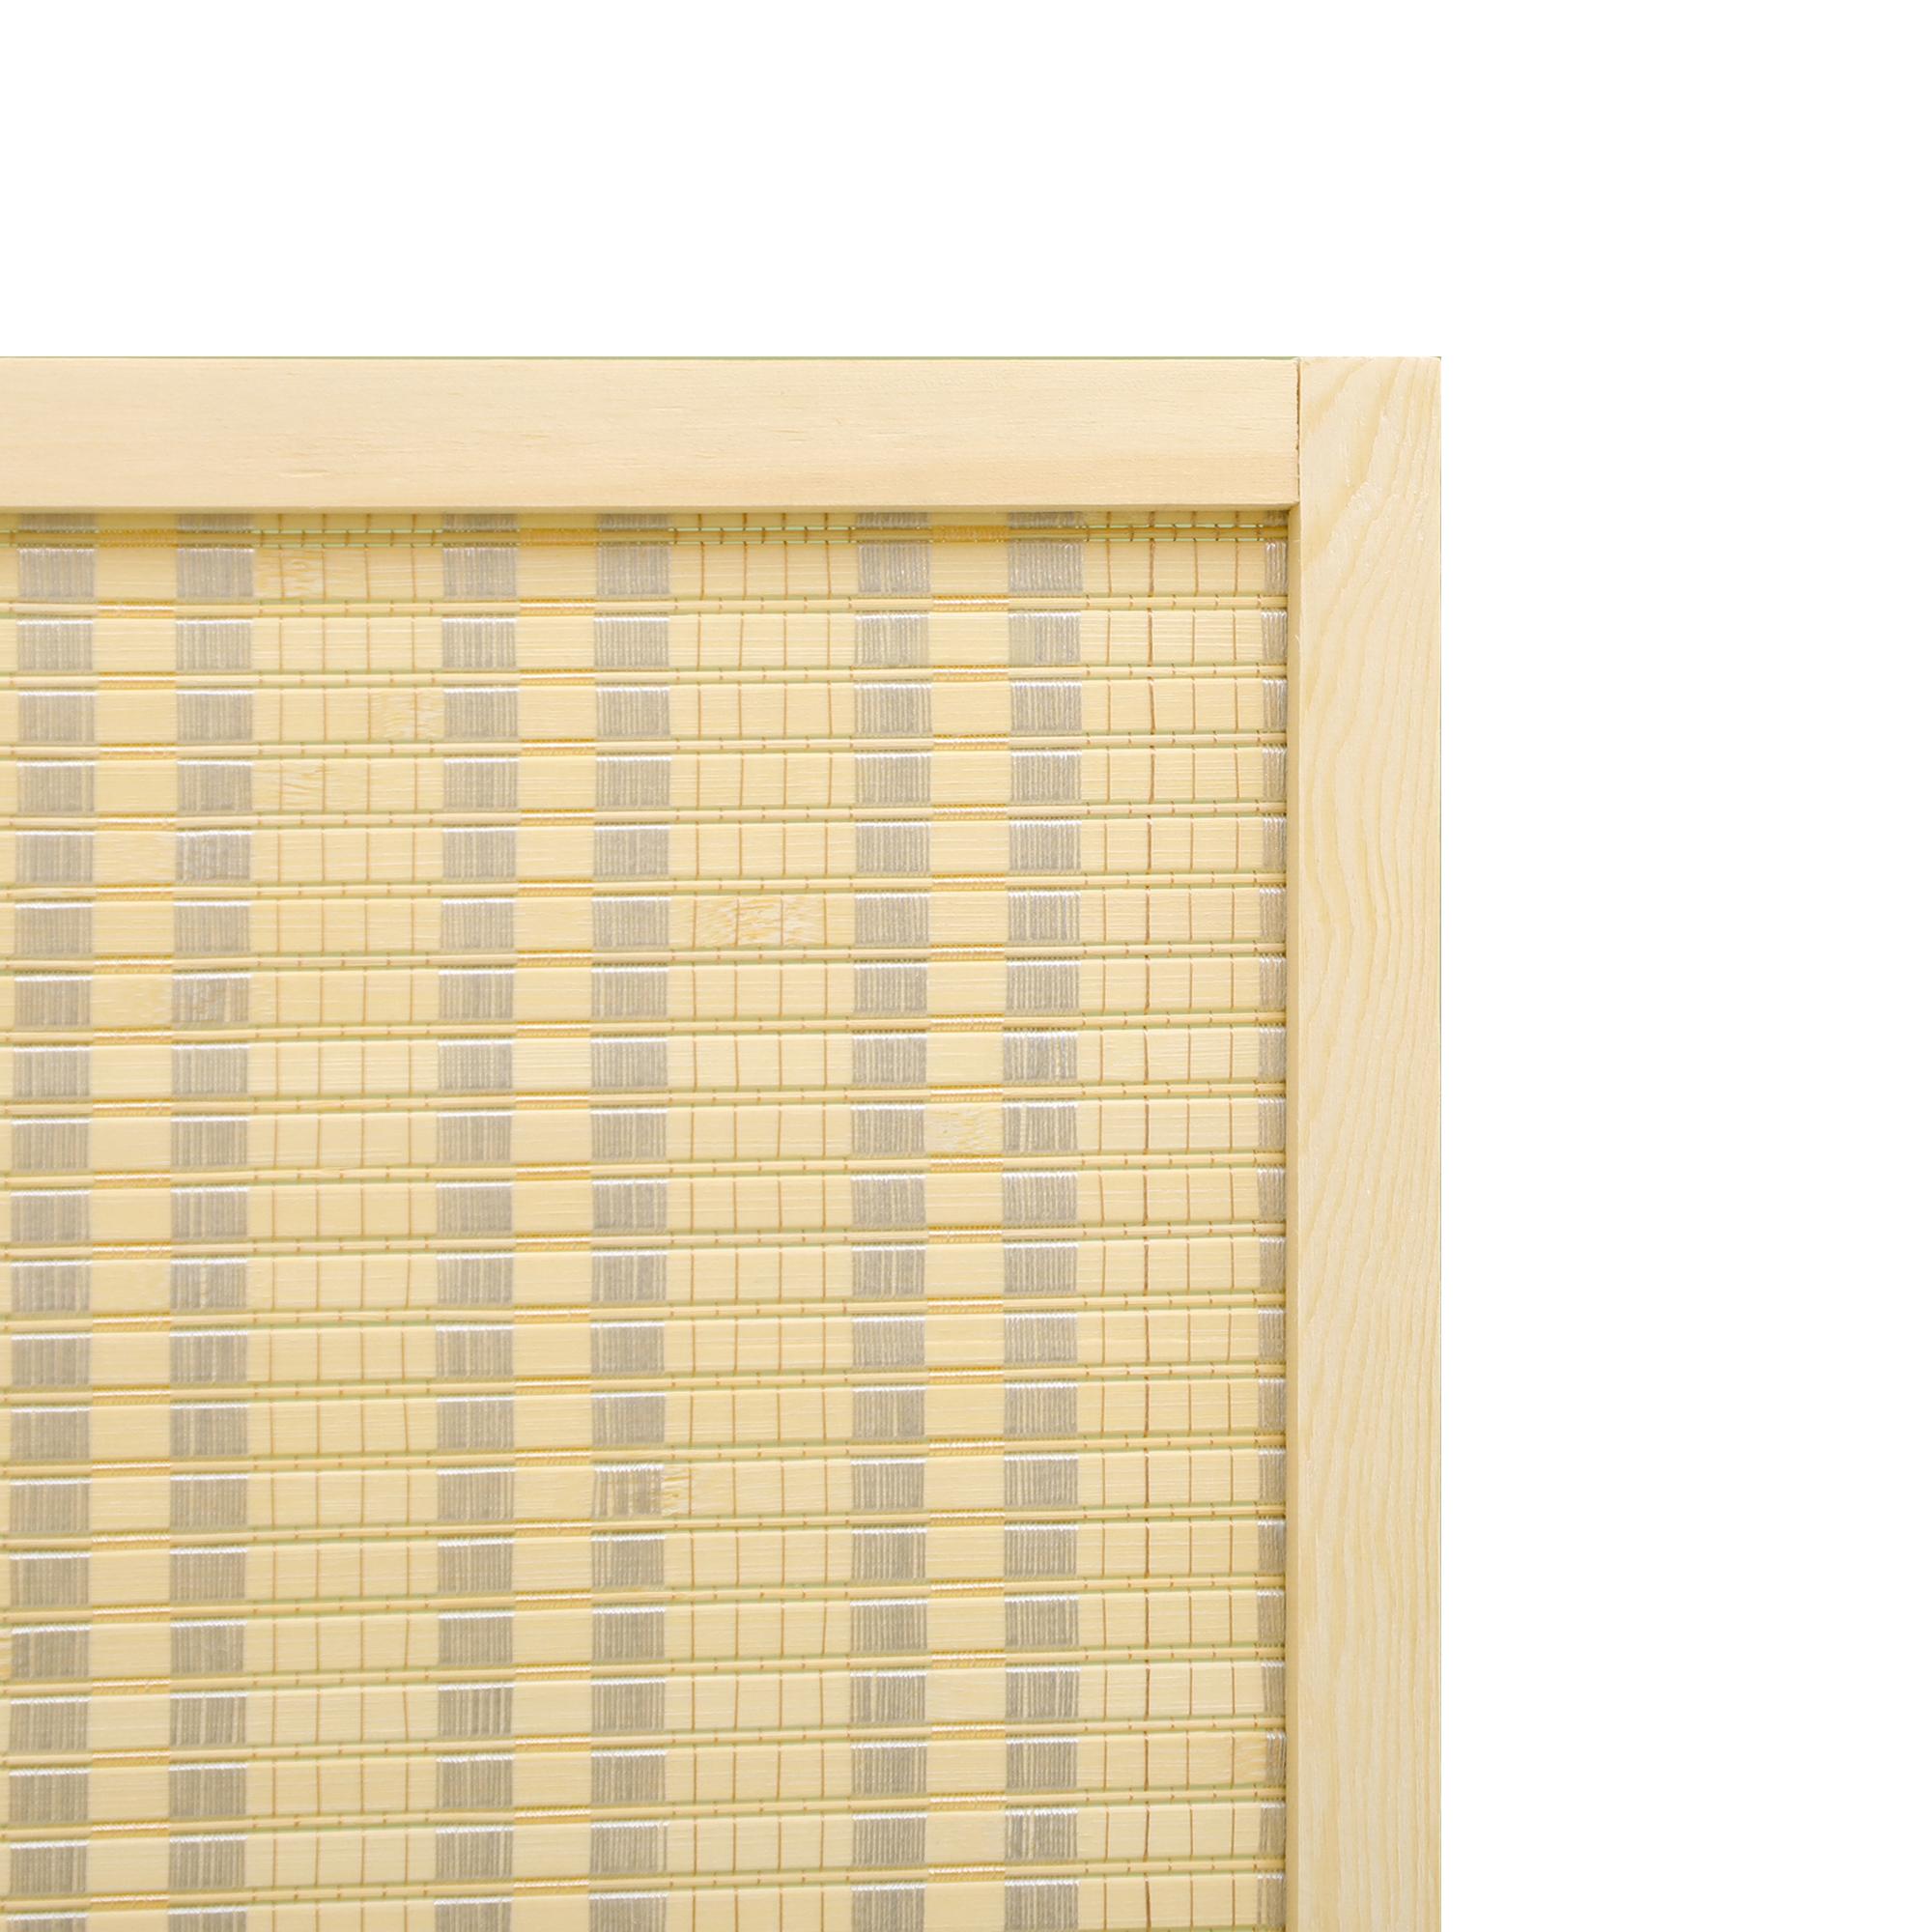 Paravent intérieur séparateur de pièce pliable 4 panneaux dim. 180L x 180H cm bois pin bambou coton